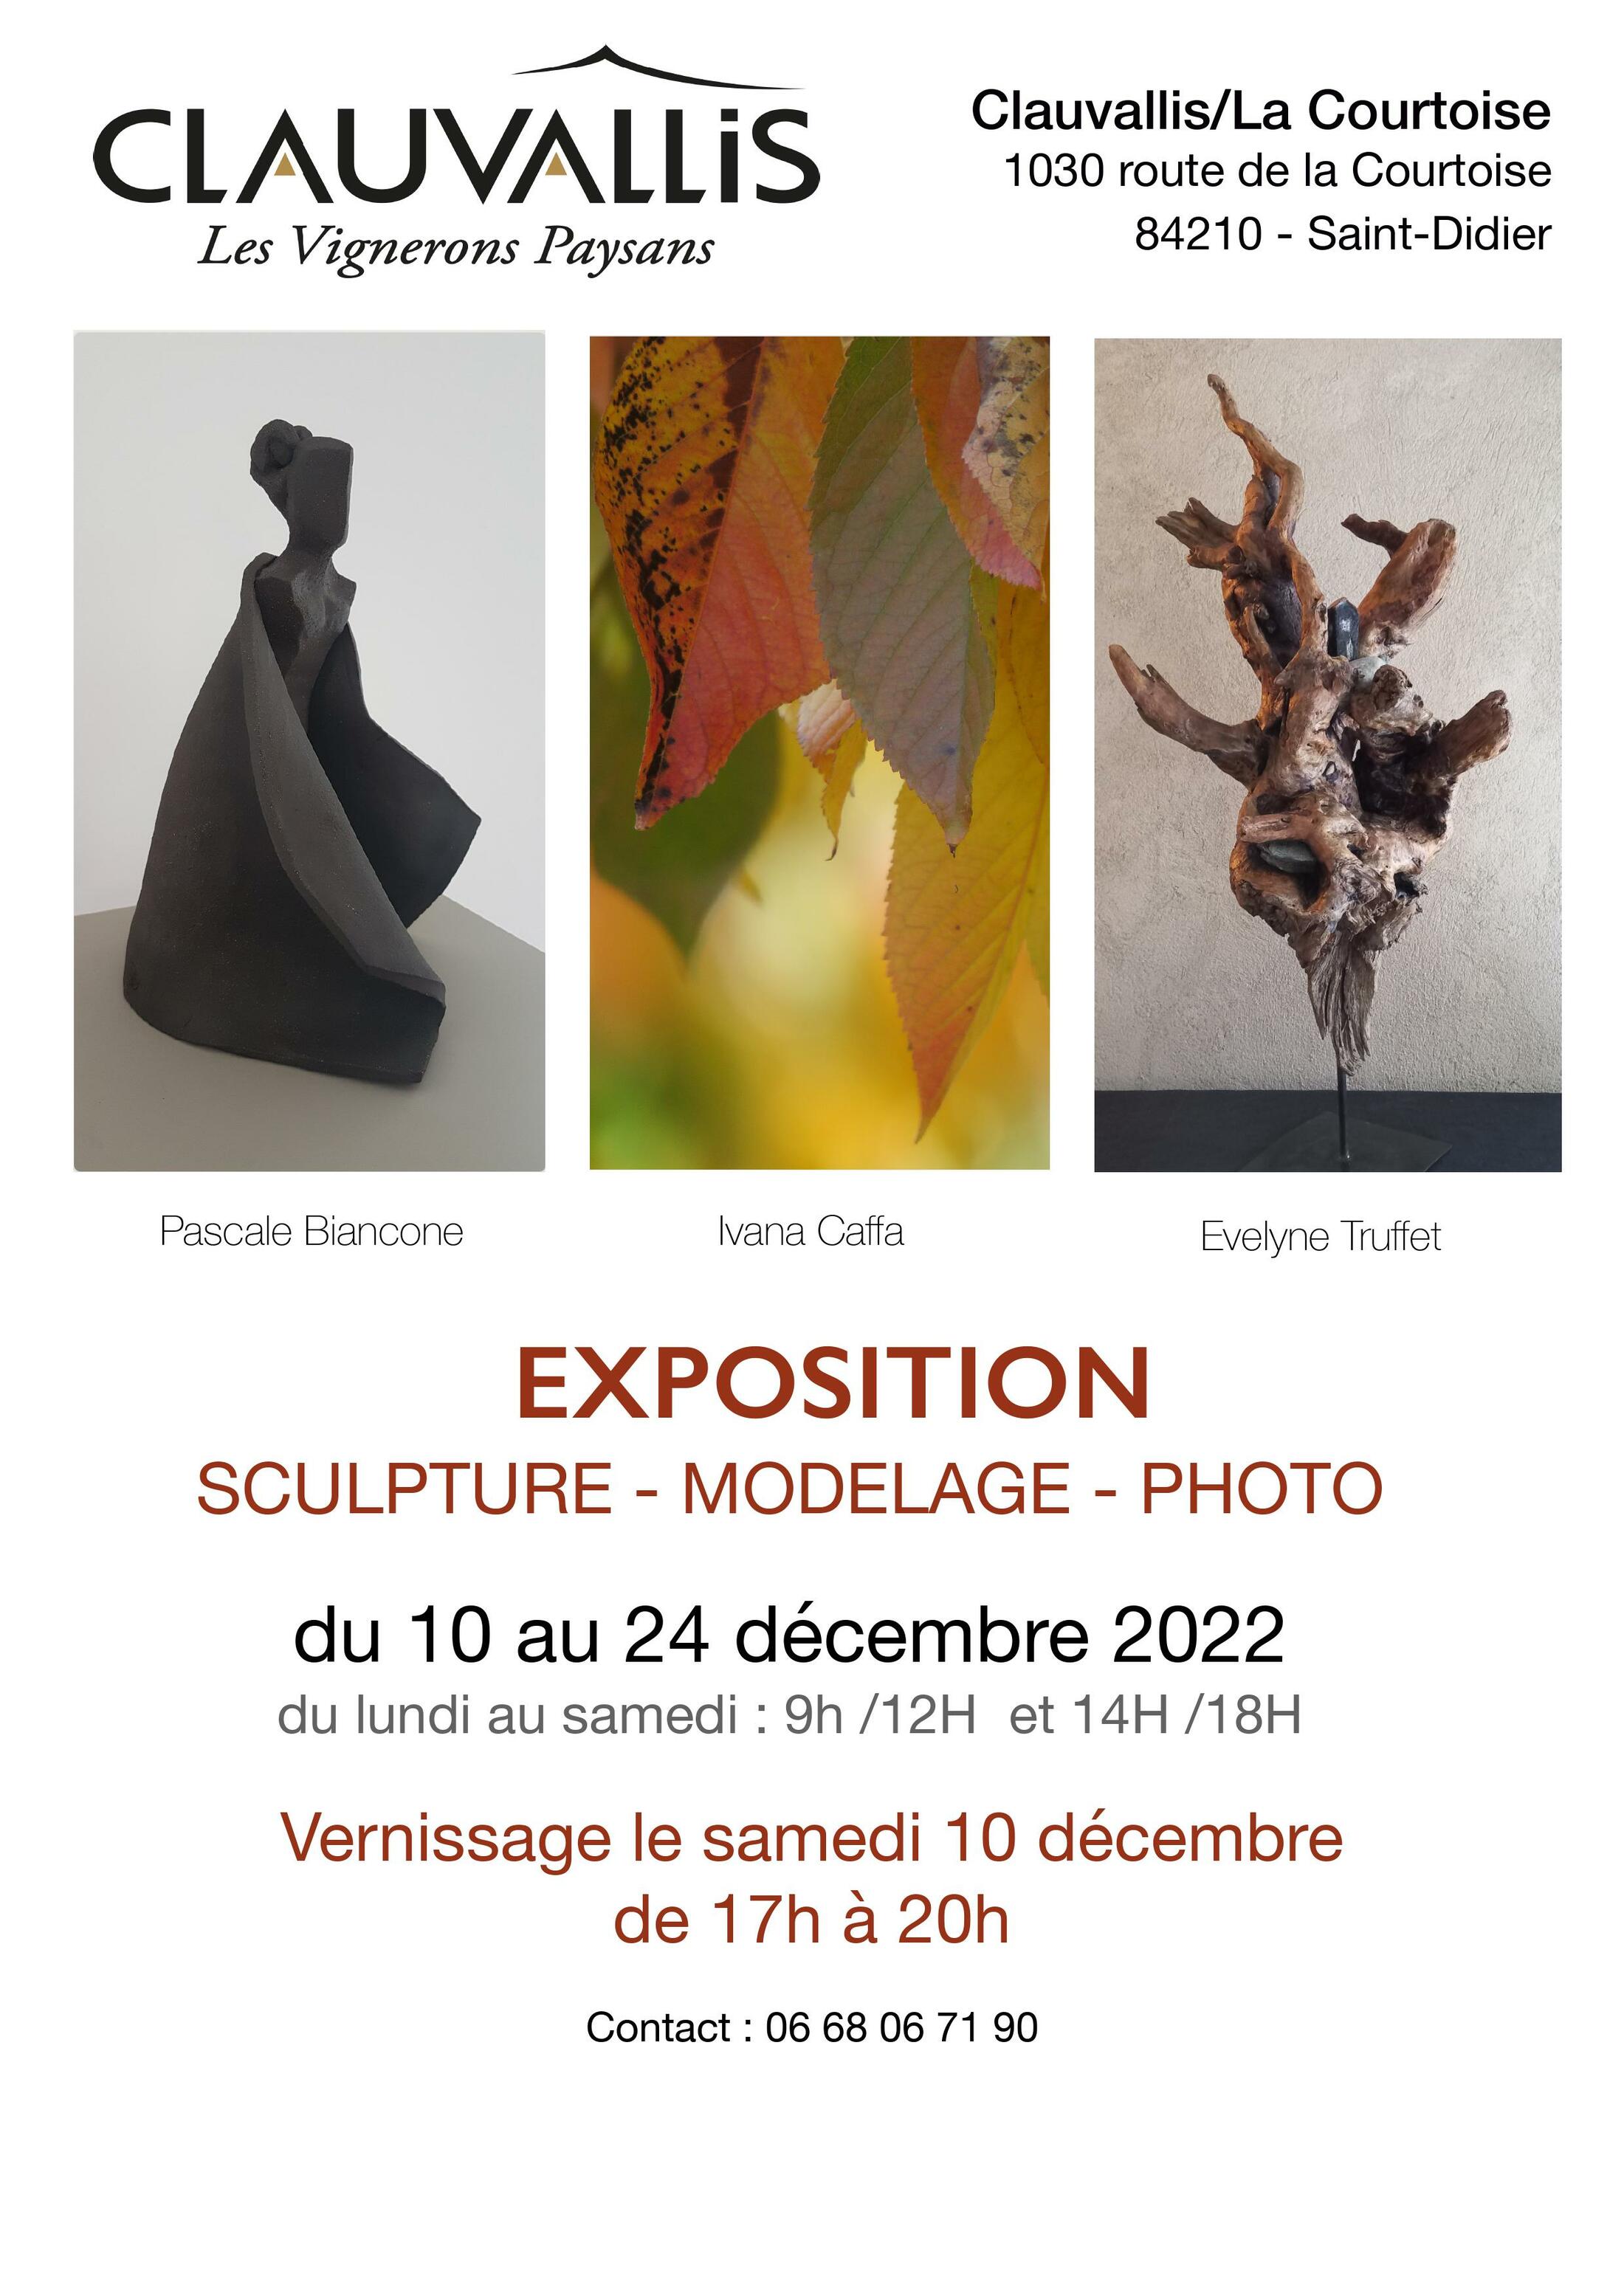 Exposition Espace Clauvallis de Sculptures,  Modelages et Photos